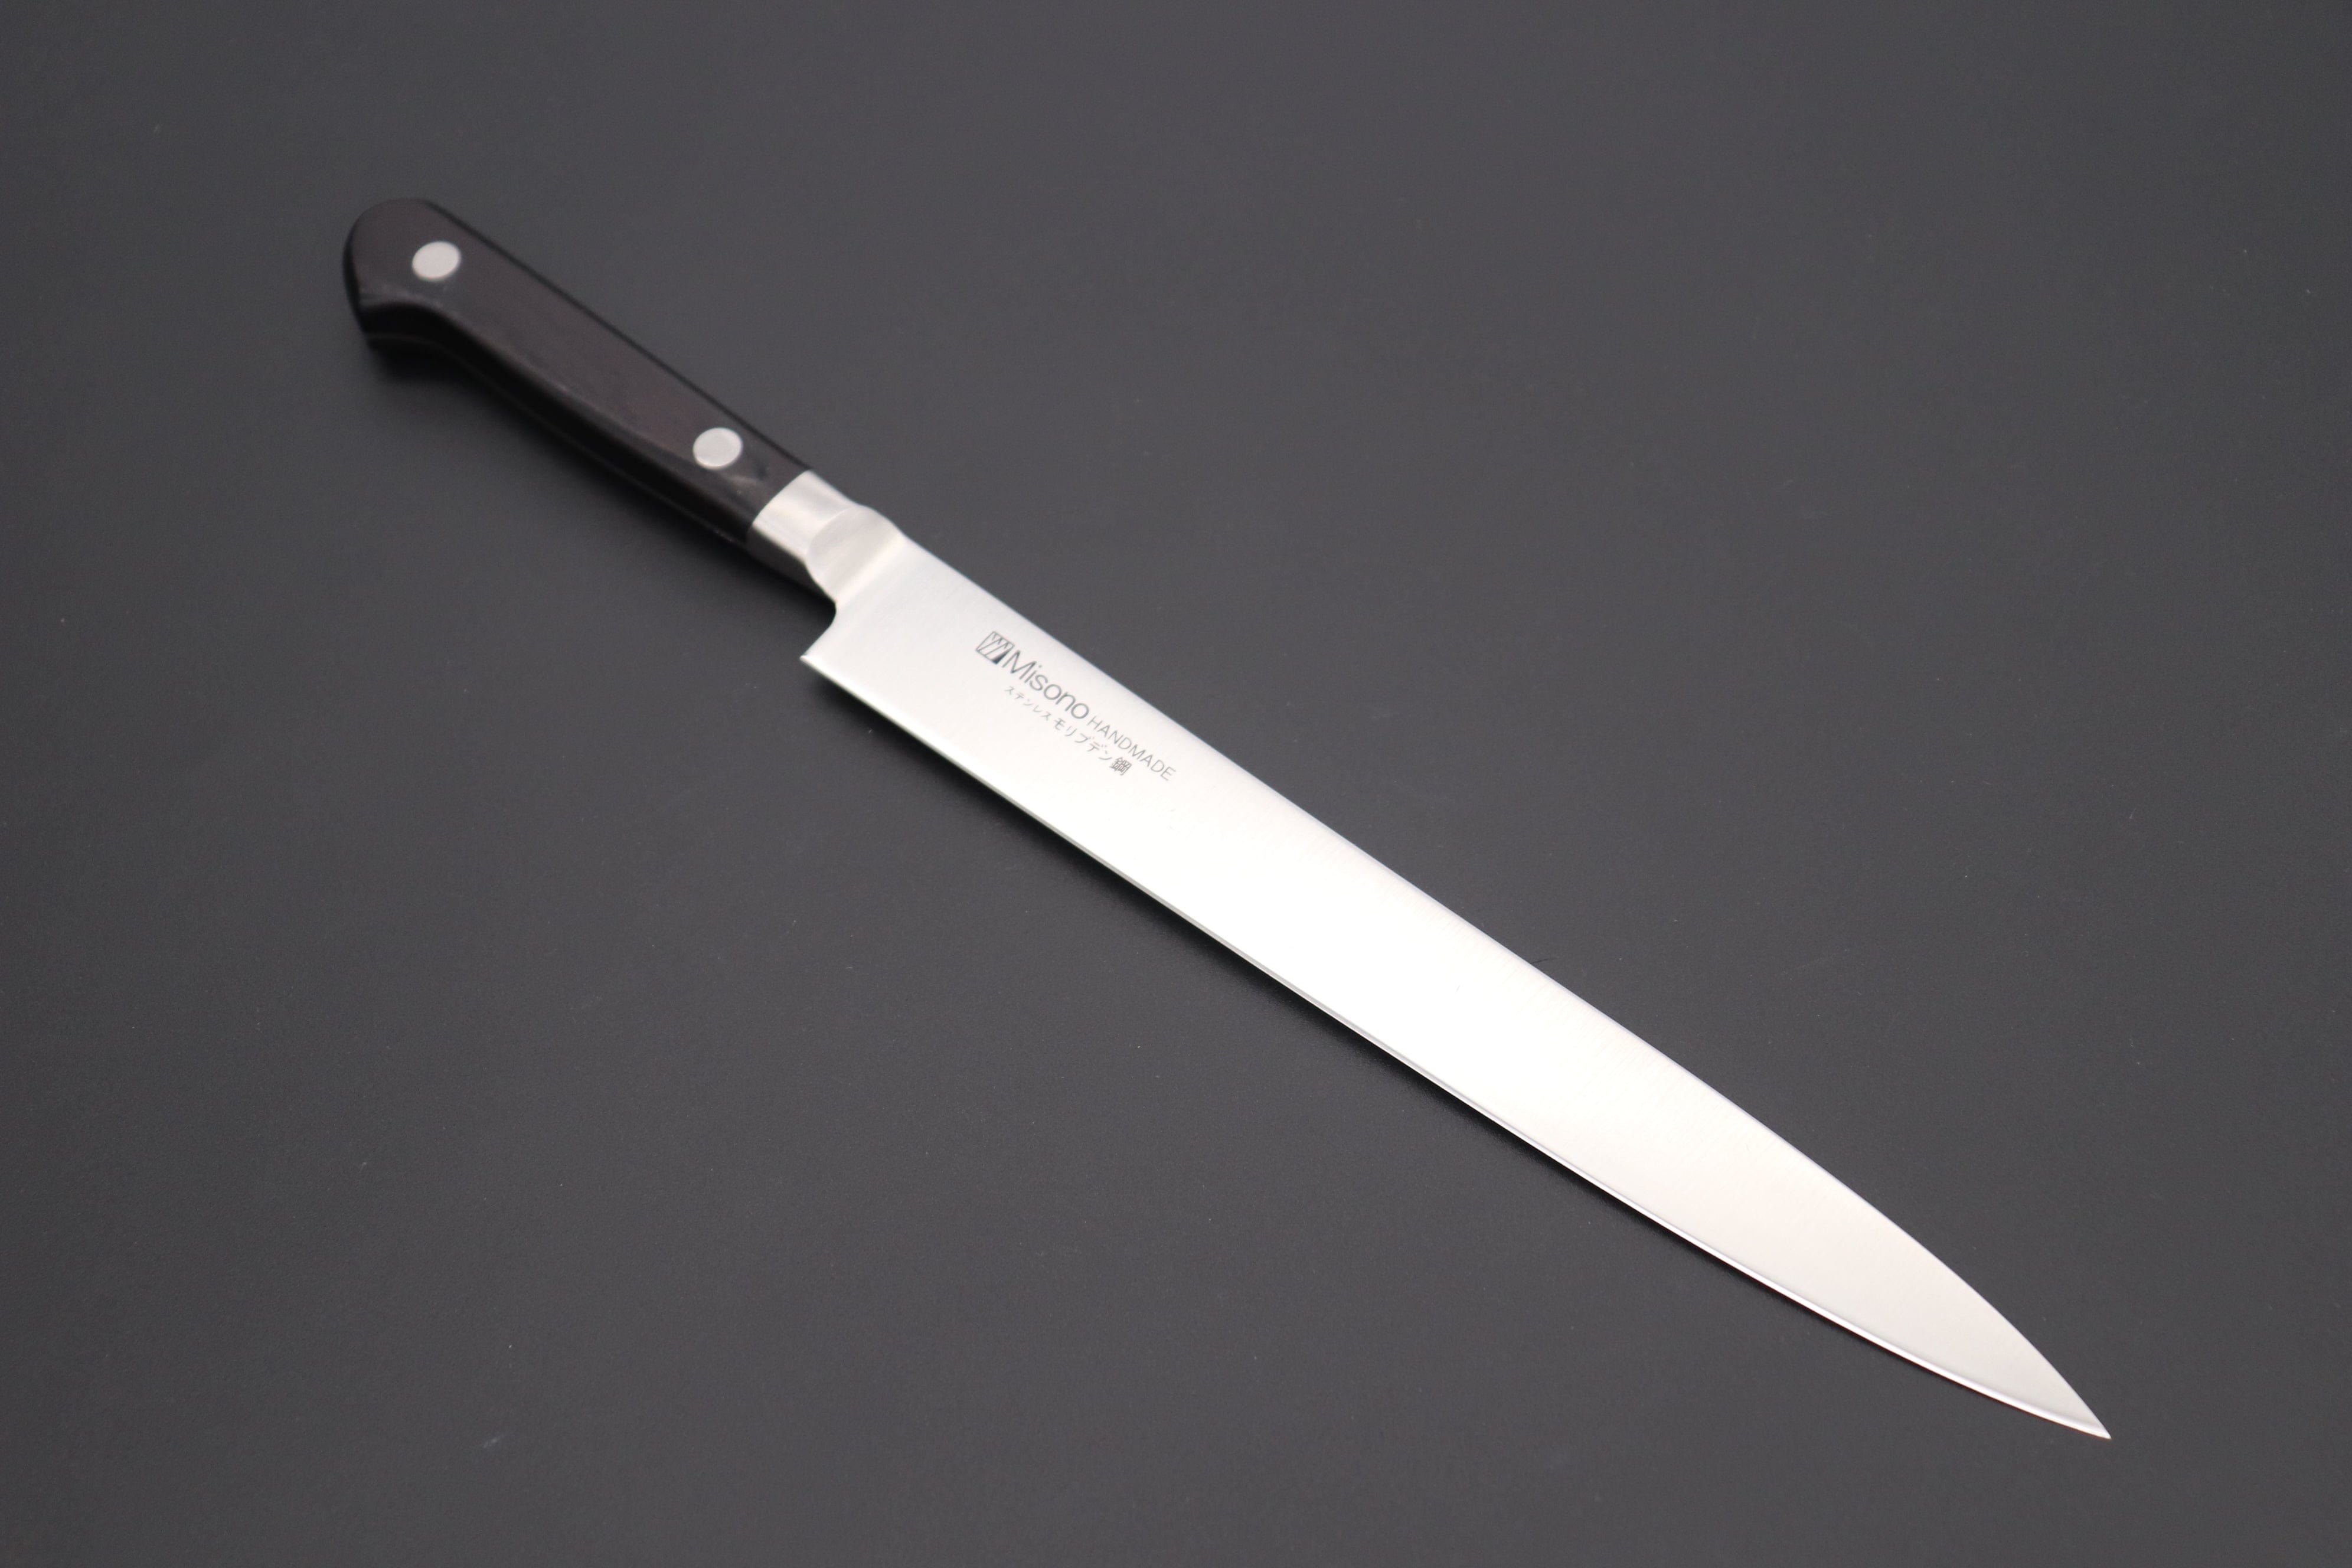 https://japanesechefsknife.com/cdn/shop/files/misono-fillet-knife-misono-molybdenum-steel-series-fillet-knife-200mm-and-240mm-2-sizes-42469096587547.jpg?v=1692929392